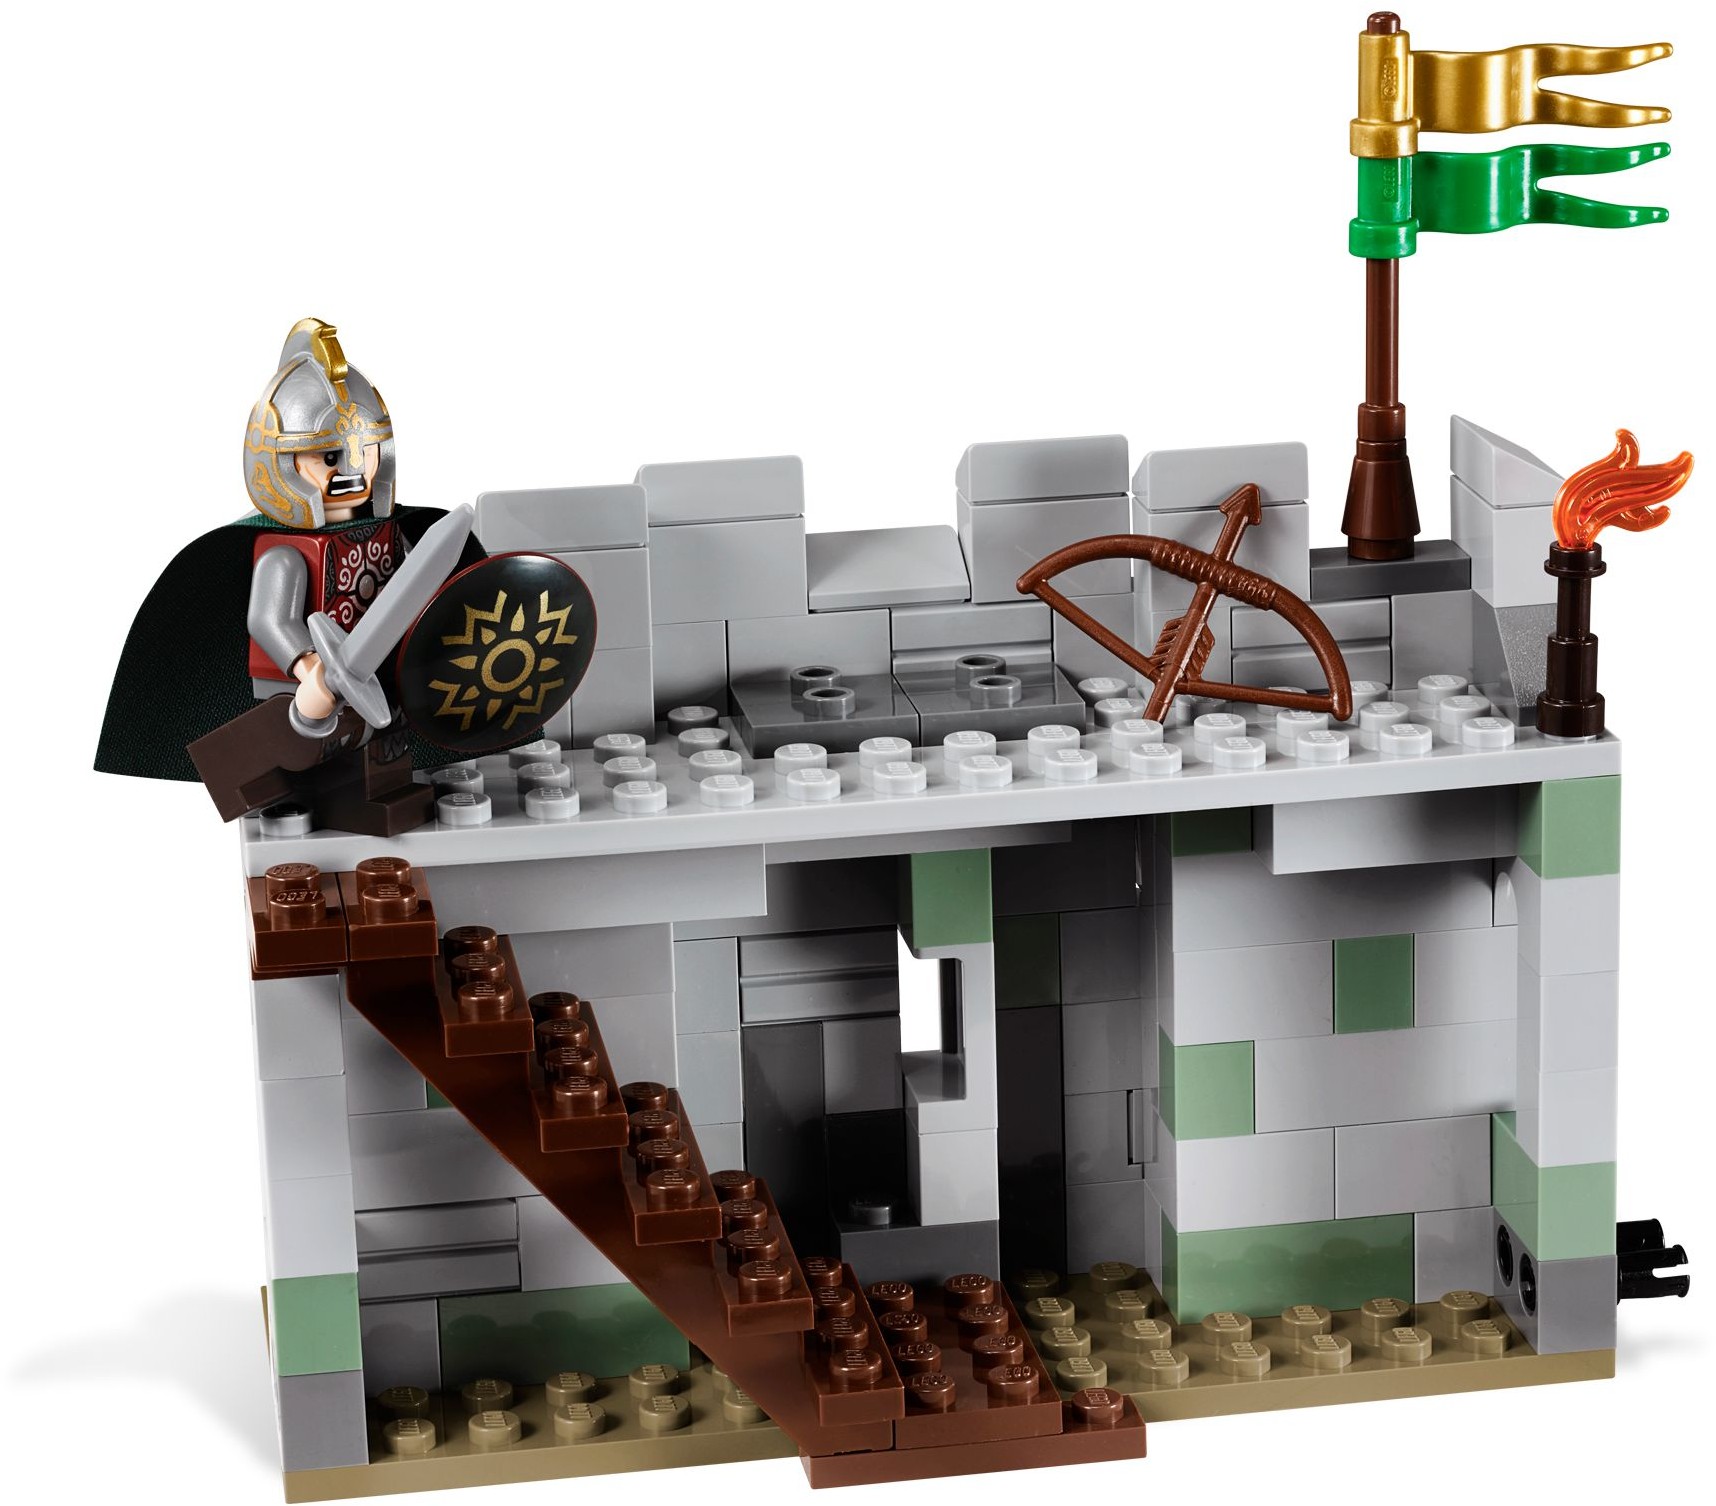 LEGO Il Signore degli Anelli - Mattonito